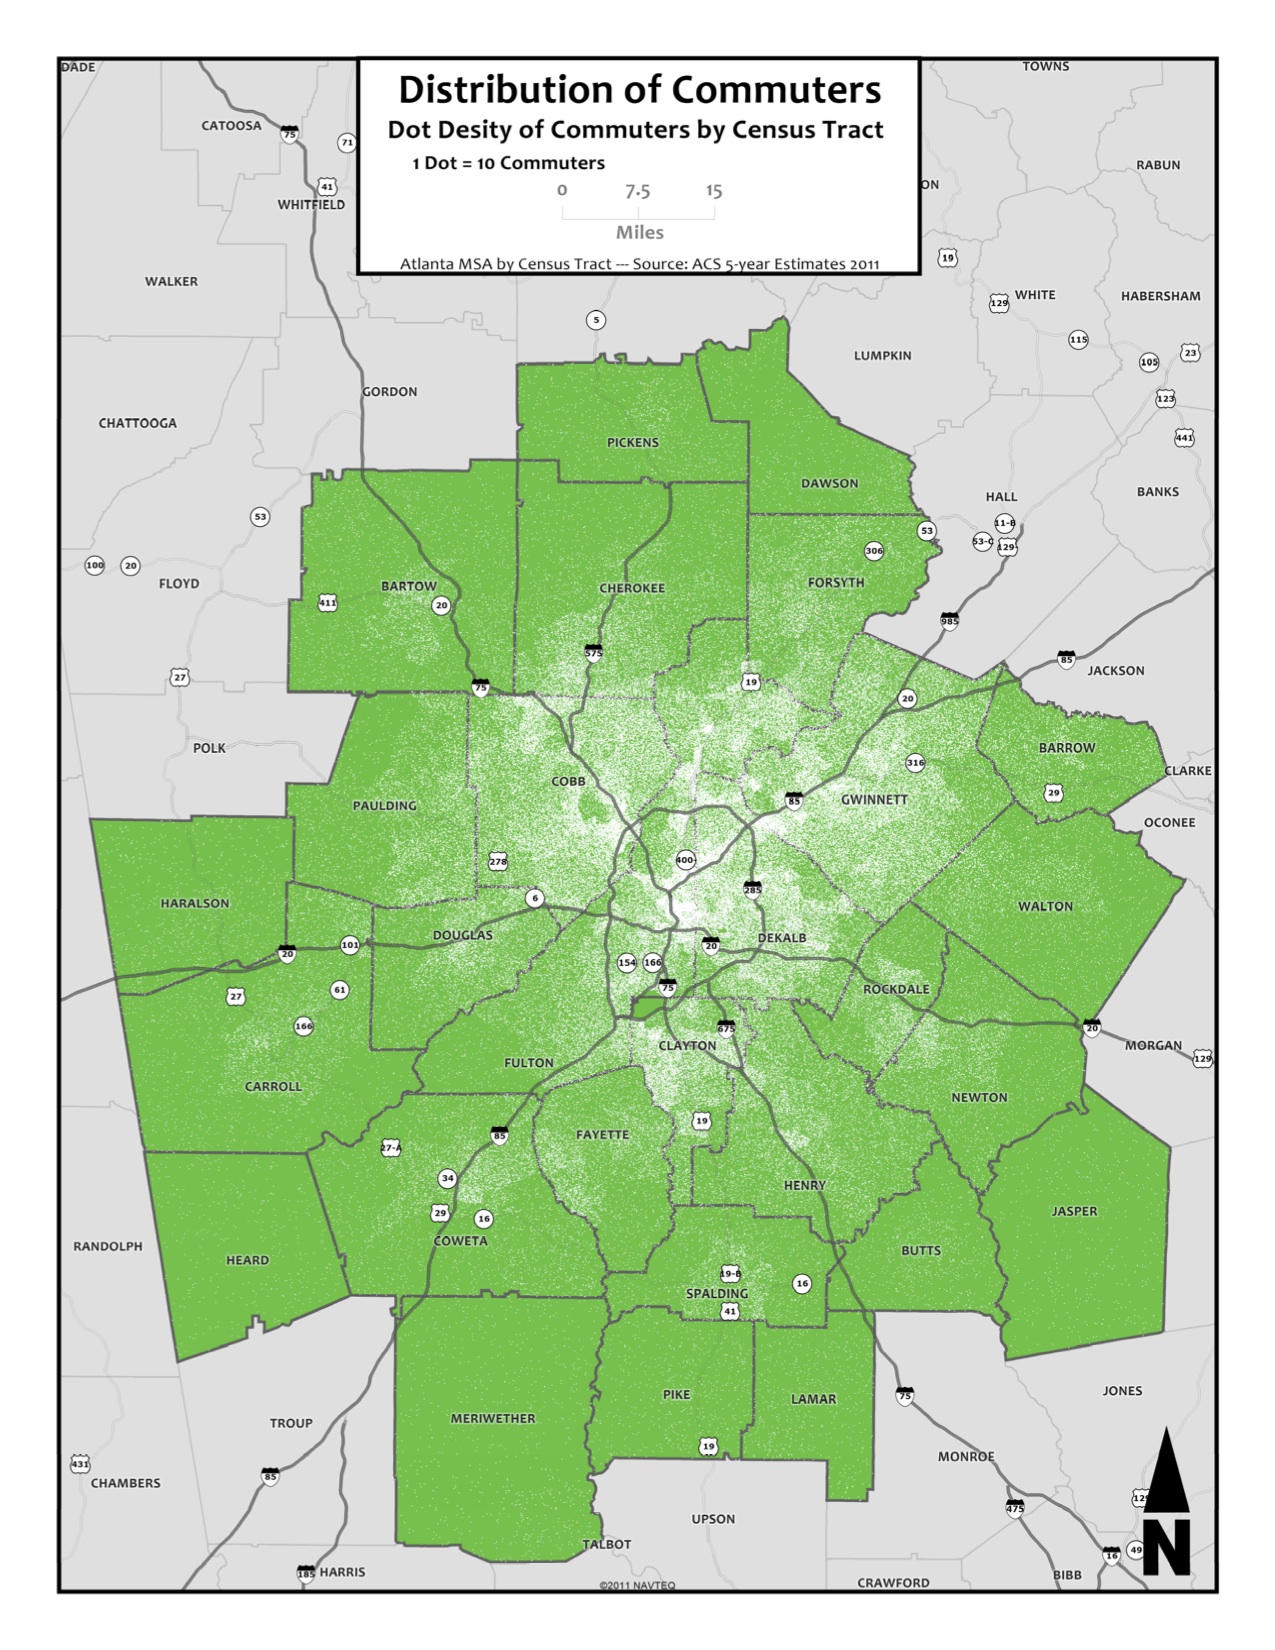 Distribution of Commuters by Dot Density (Dot=10)